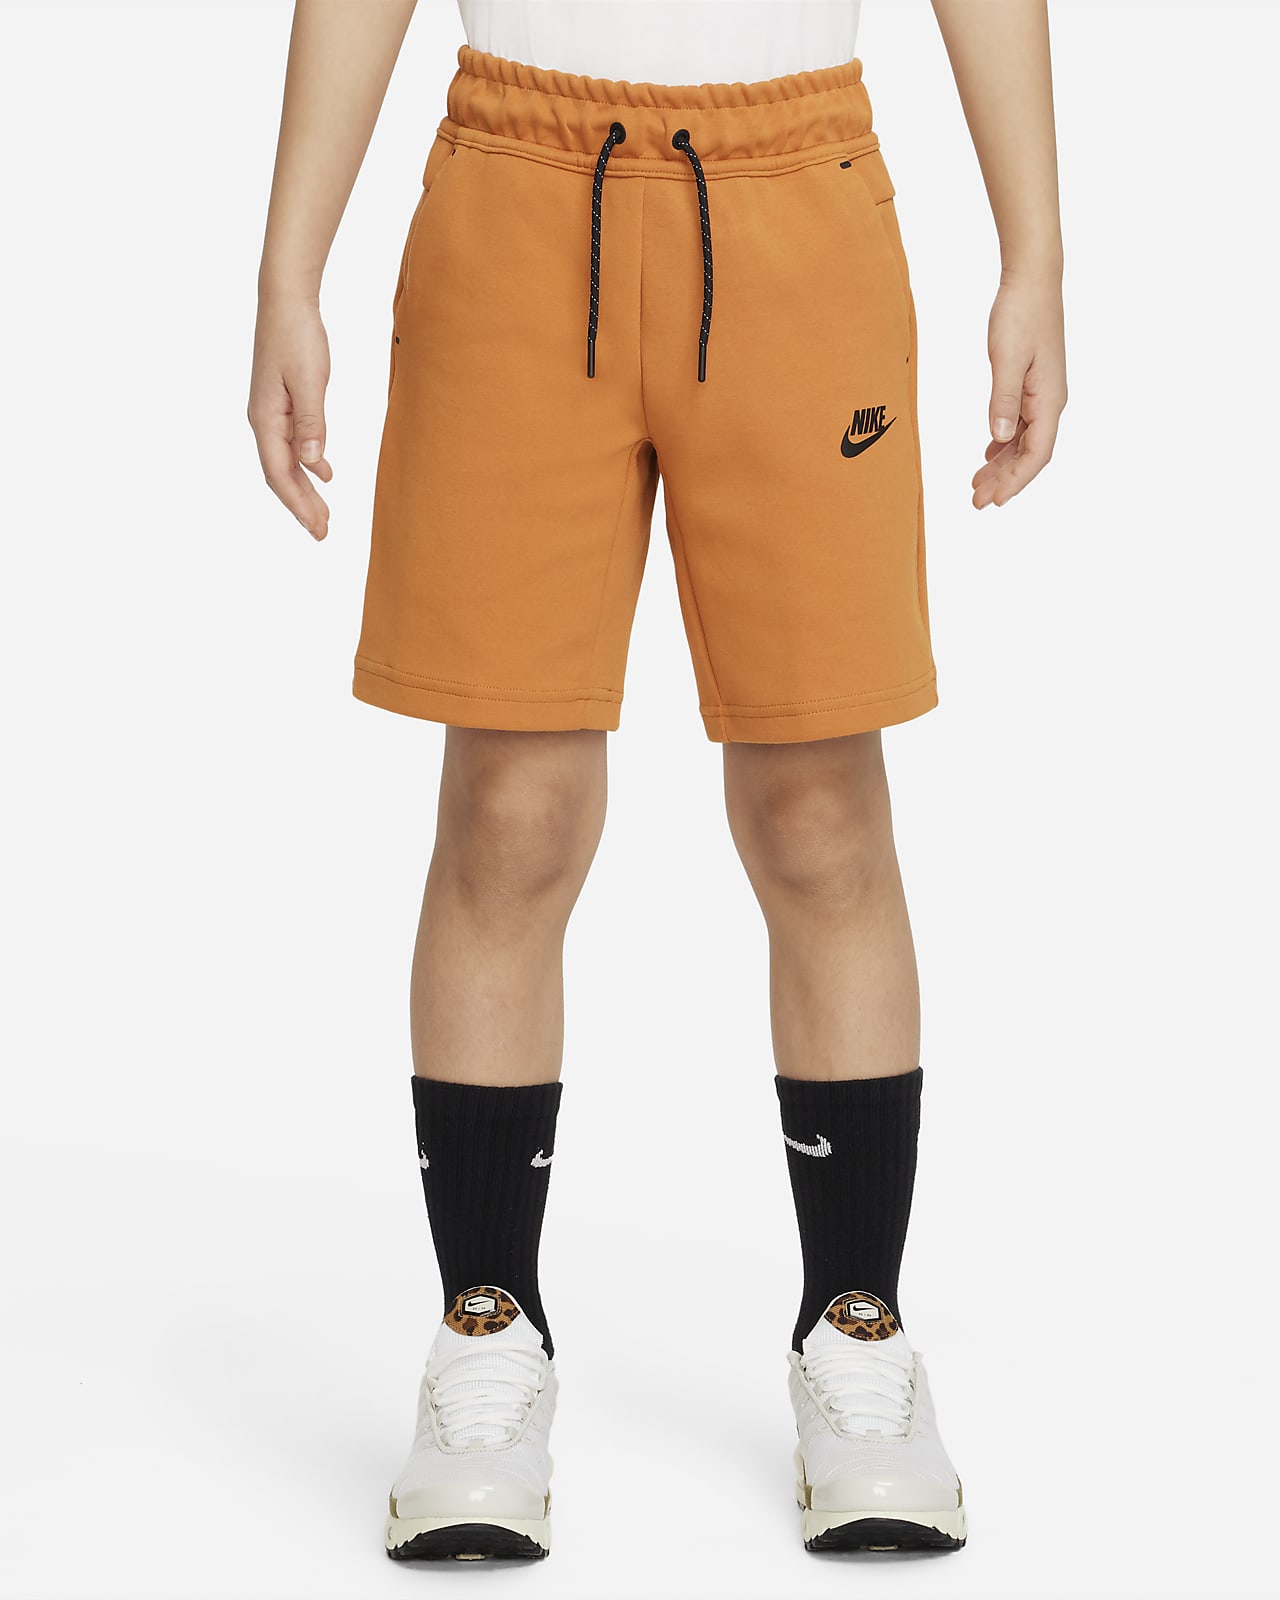 Overredend Postbode Krijger Nike Sportswear Tech Fleece Older Kids' (Boys') Shorts. Nike LU